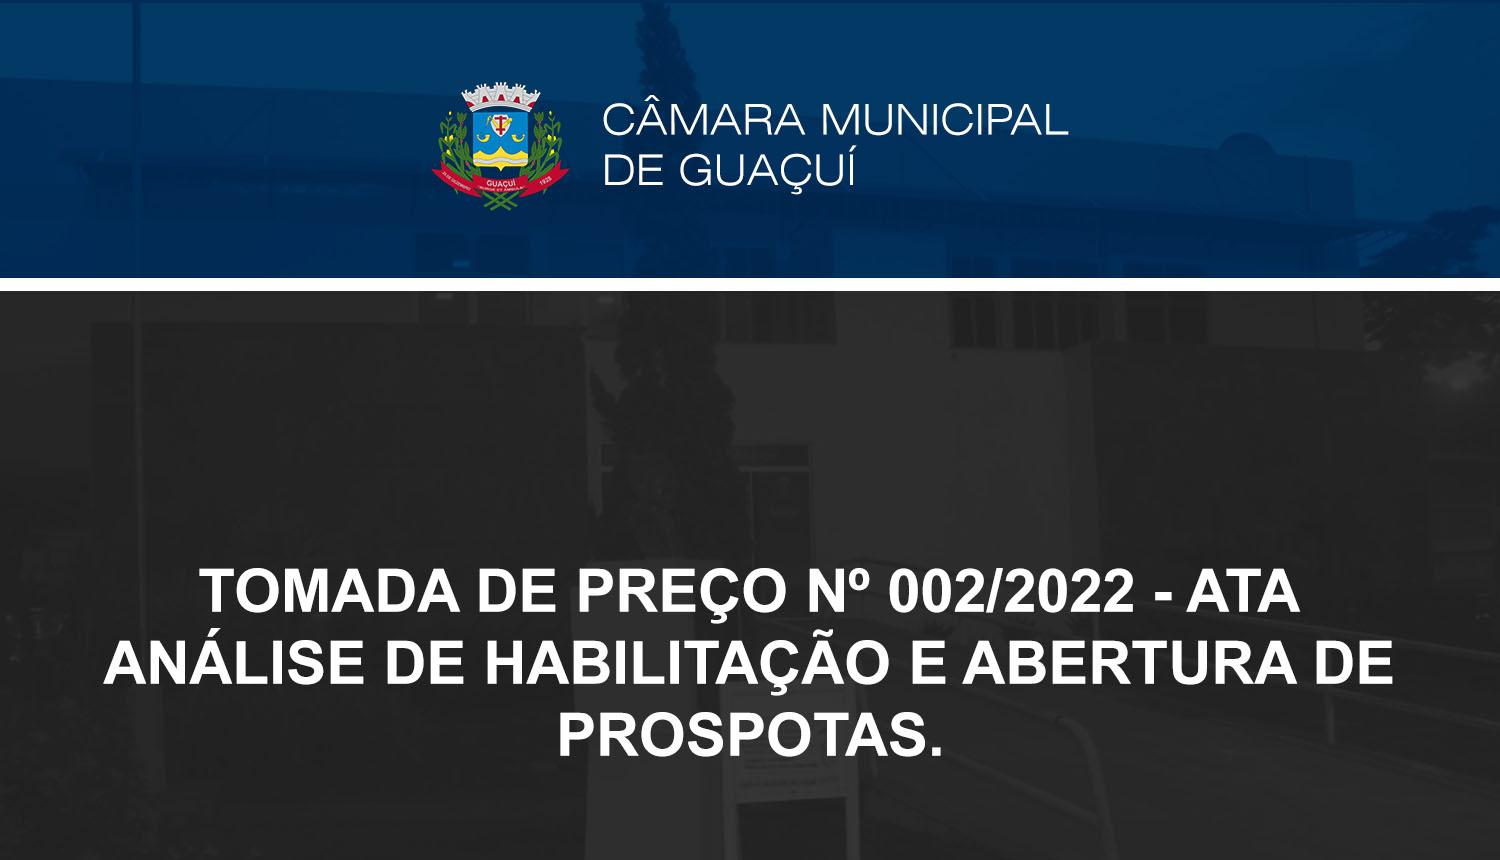 TOMADA DE PREÇO Nº 002/2022 - ATA ANÁLISE DE HABILITAÇÃO E ABERTURA DE PROSPOTAS.